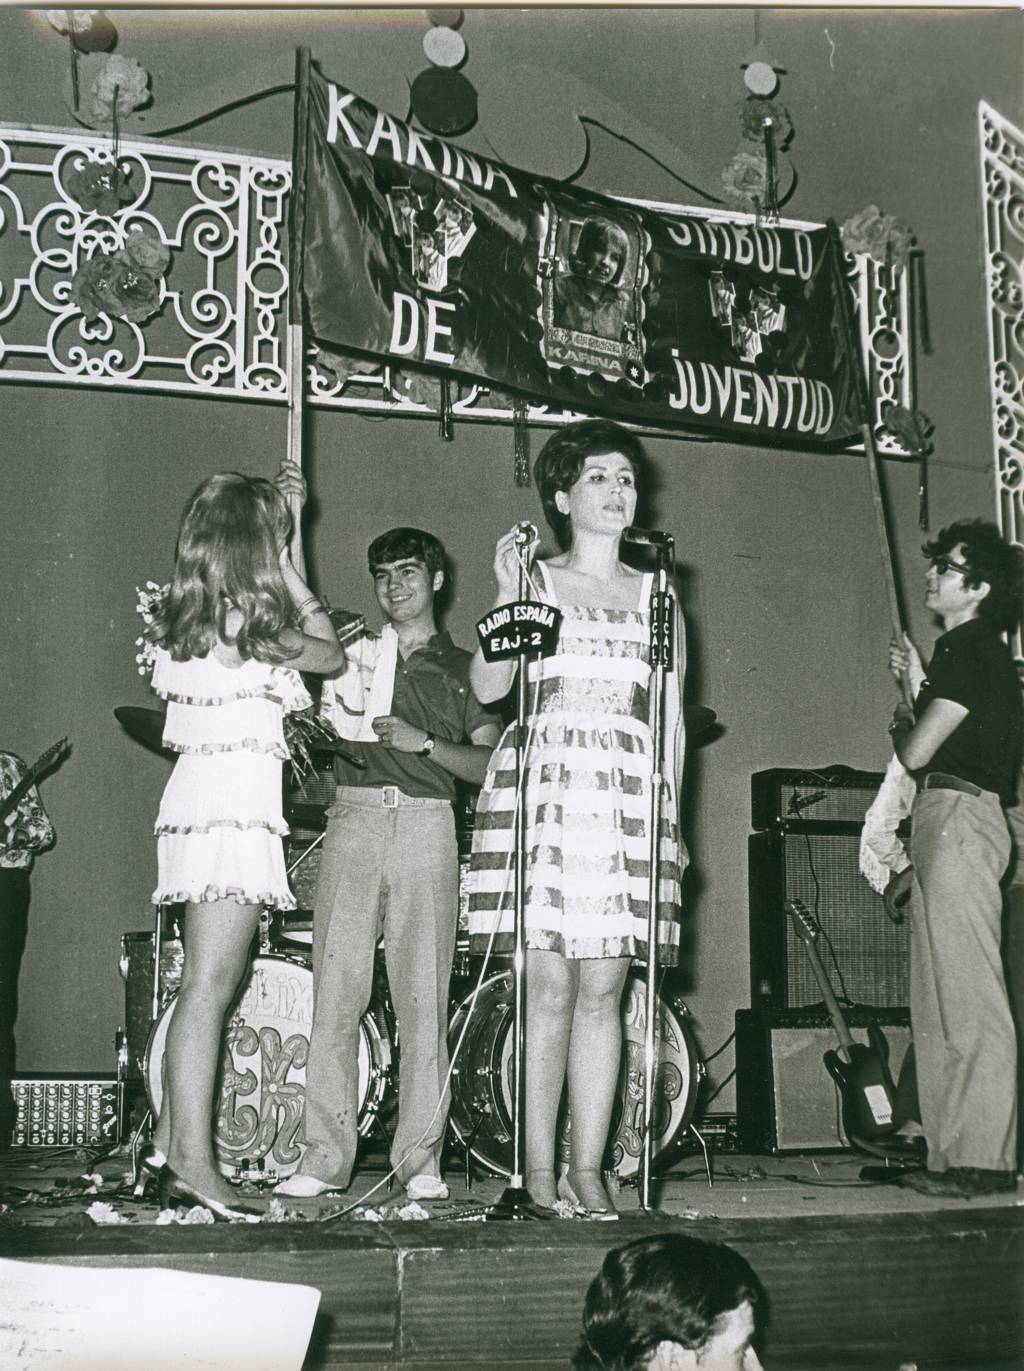 Maruja Garrido consiguió el título de la mejor cantante flamenca, con su célebre canción “La luna ya está en el bote” recibió una de las mayores ovaciones del festival. El flamenco tenía su sitio en los gustos juveniles.